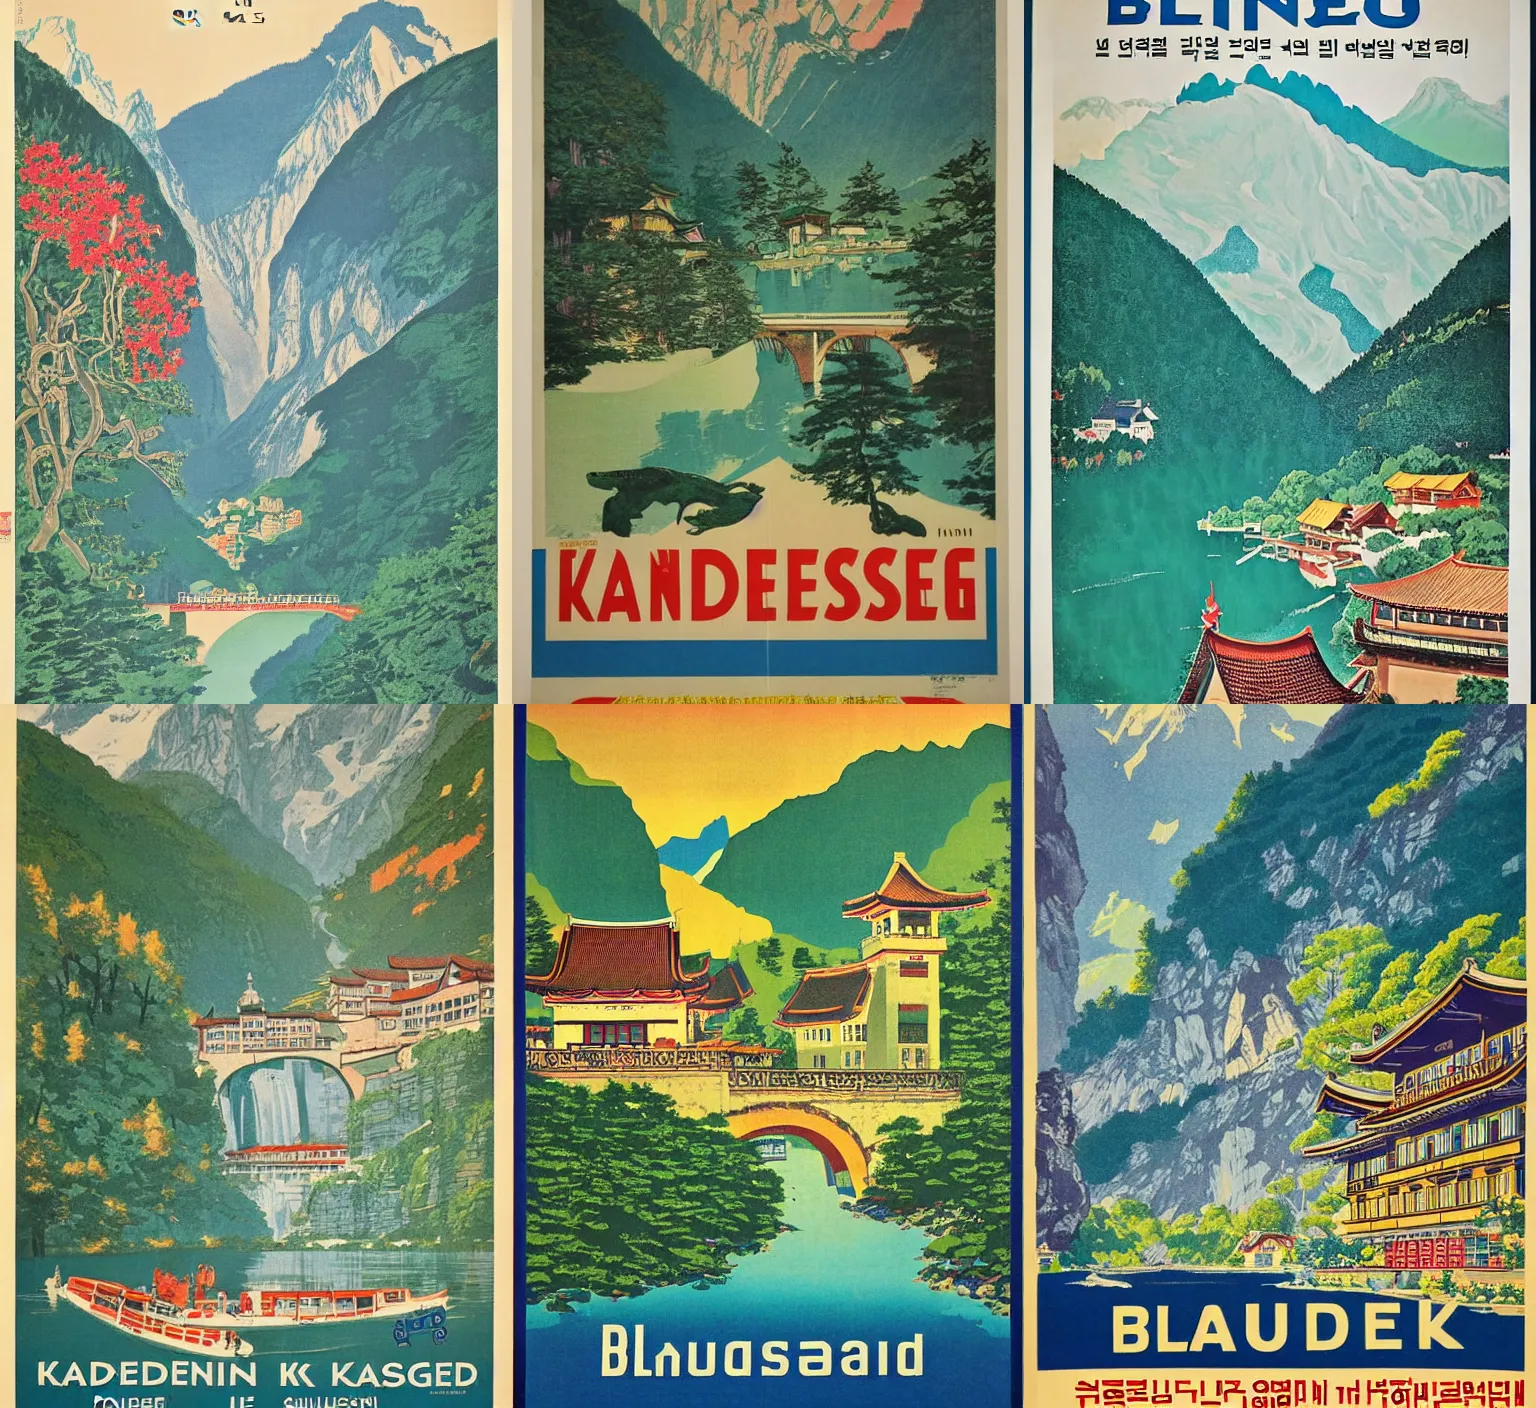 Prompt: Vintage Korean travel poster for Blausee (블라우제) Kandergrund Switzerland